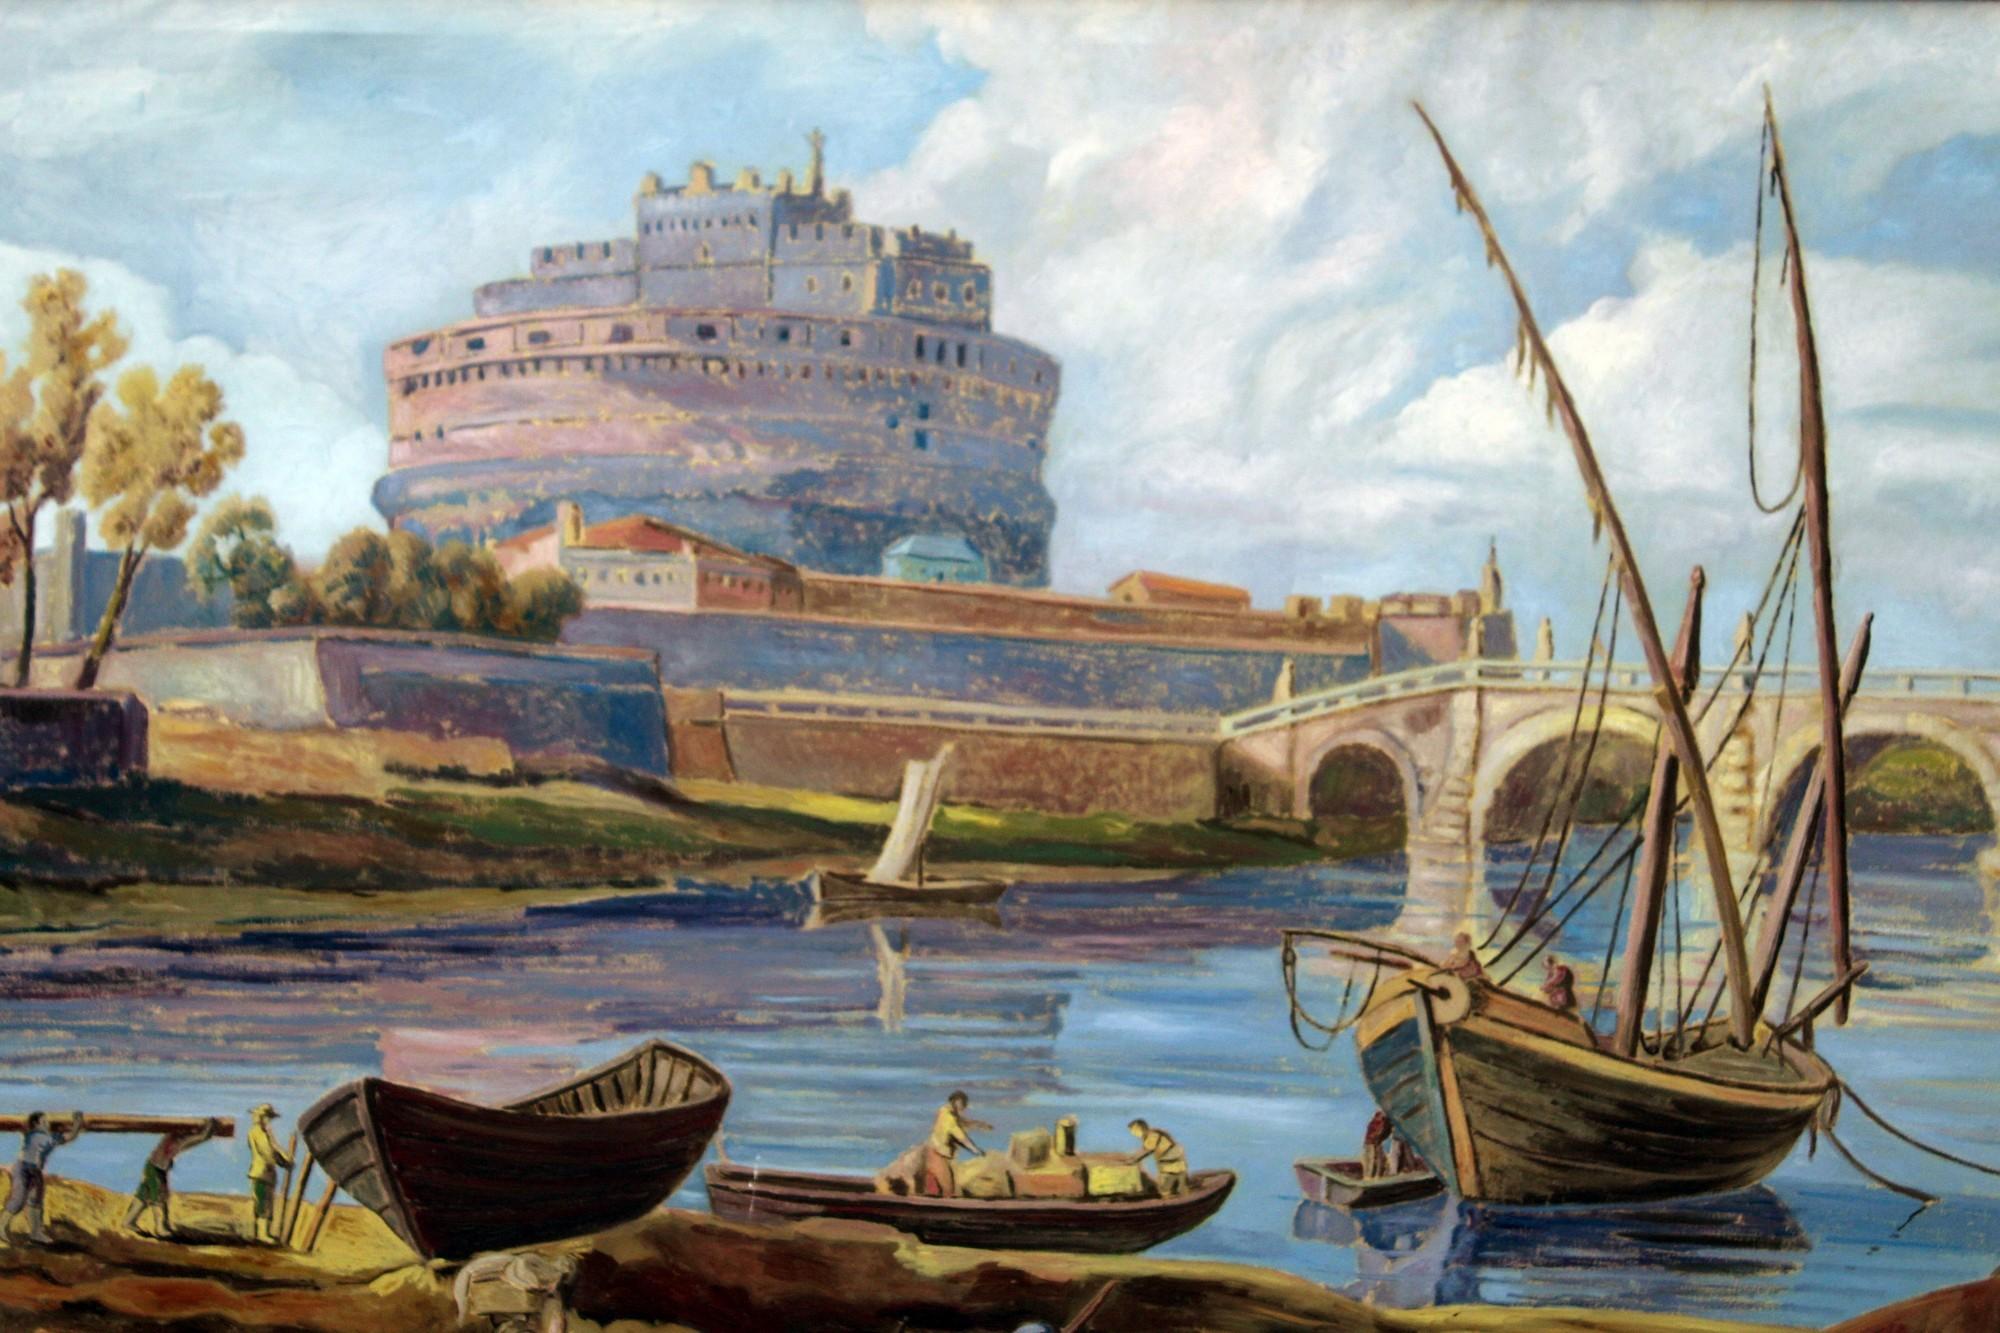 Le tableau est une scène de genre typique de la Rome du XVIIe siècle, une vie quotidienne le long du Tibre.   avec la rivière Tiber, Castel Sant'Angelo.
Des pêcheurs et des personnages se trouvent sur la rive du fleuve, tandis que plusieurs bateaux